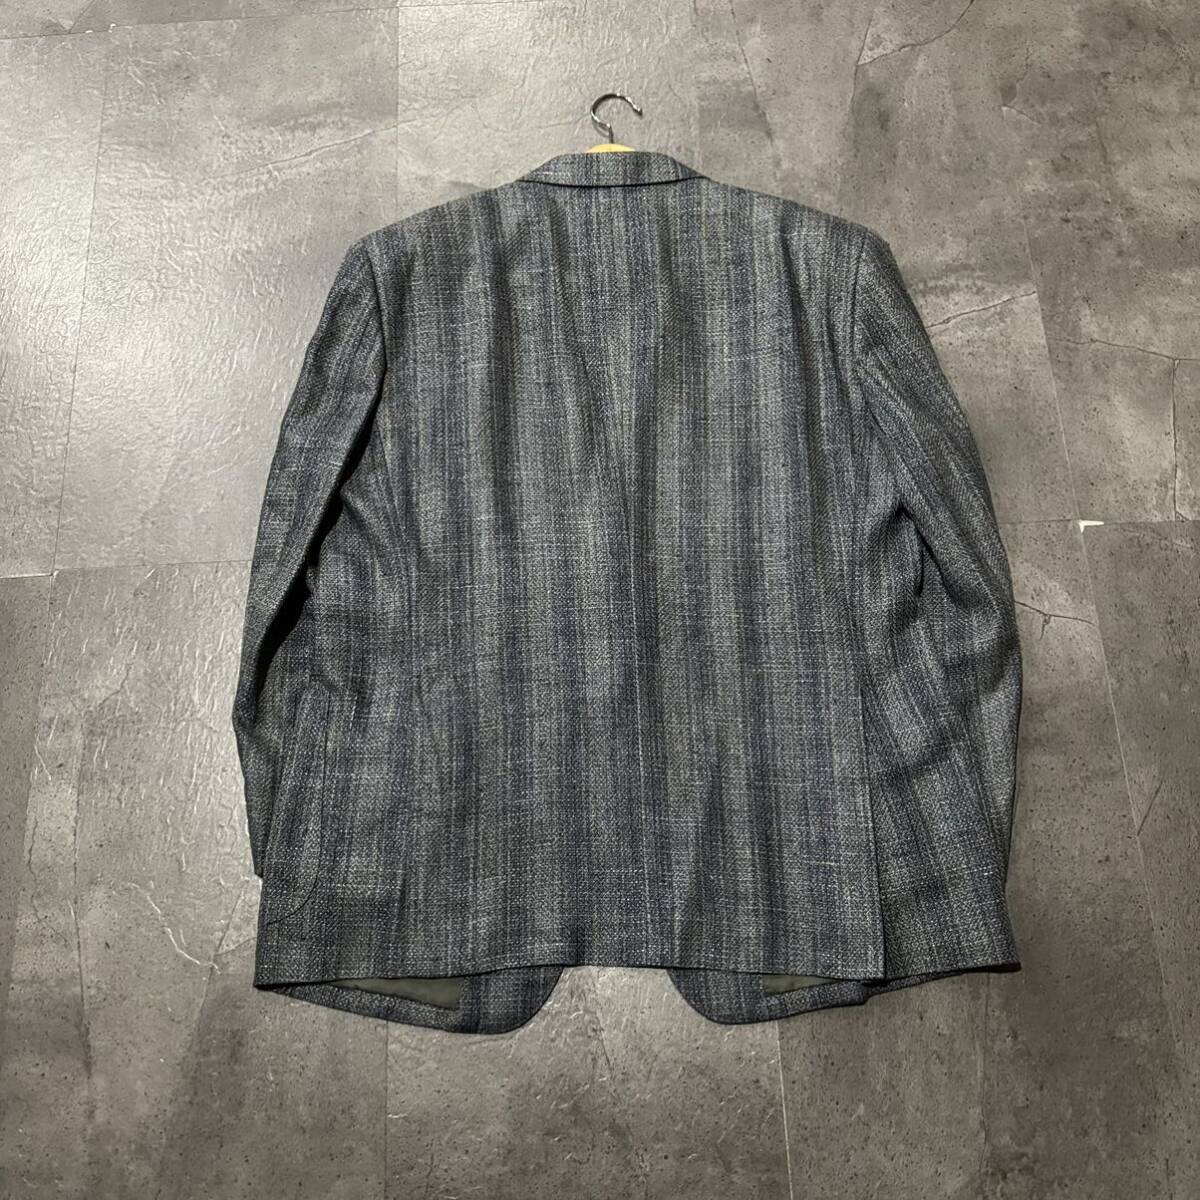 F☆ 高級ラグジュアリー服 '上質シルク100%使用' LANVIN ランバン 格子柄 ツイード生地 テーラードジャケット sizeST48-55 アウター 紳士服の画像3